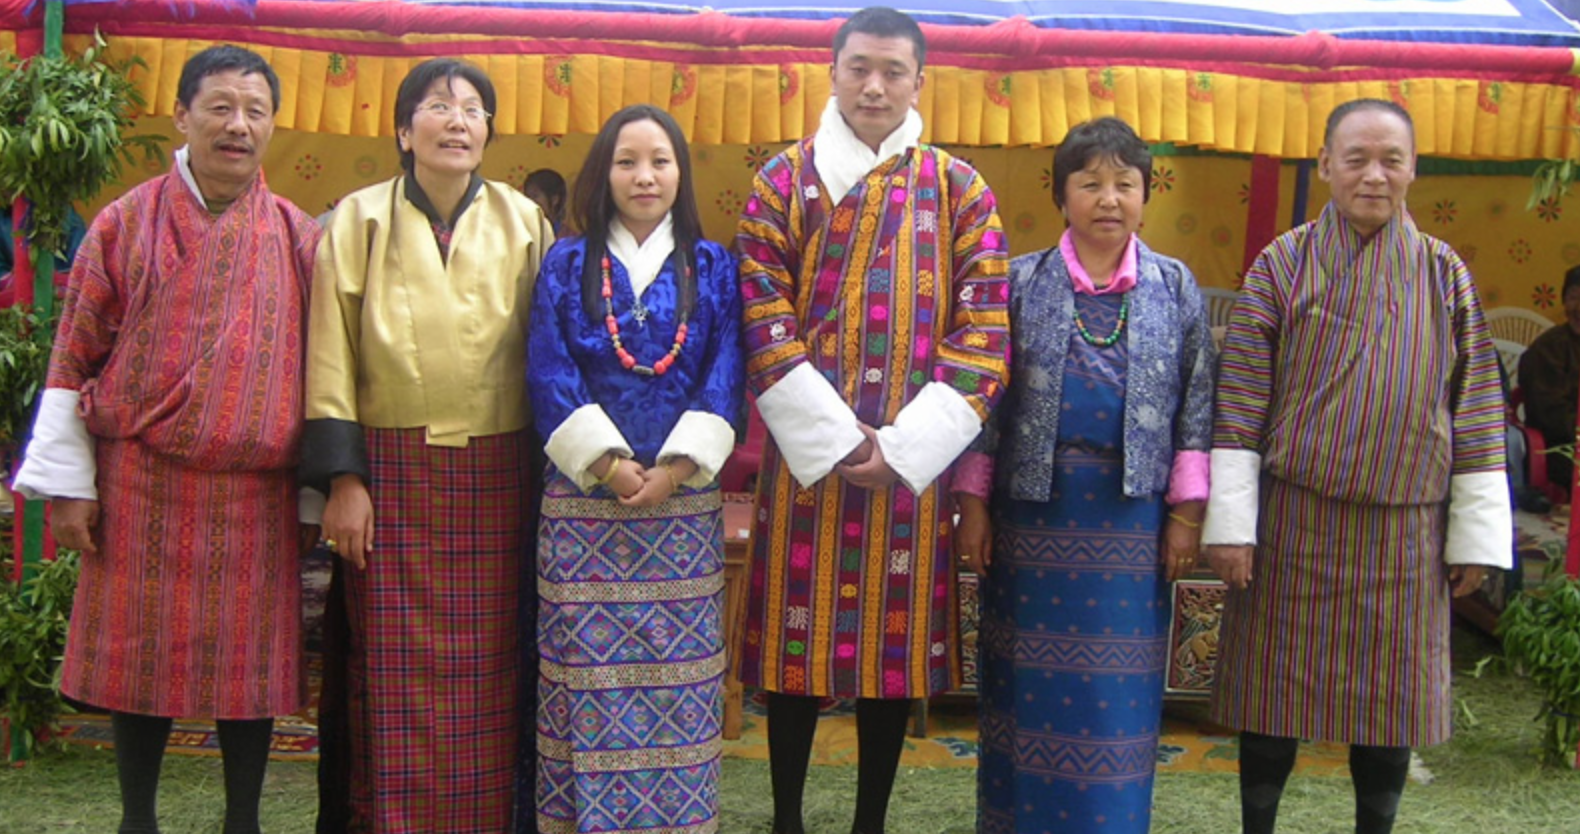 Бутан язык. Бутан одежда. Национальный костюм бутана. Национальная одежда бутан мужчин. Бутан женщины.